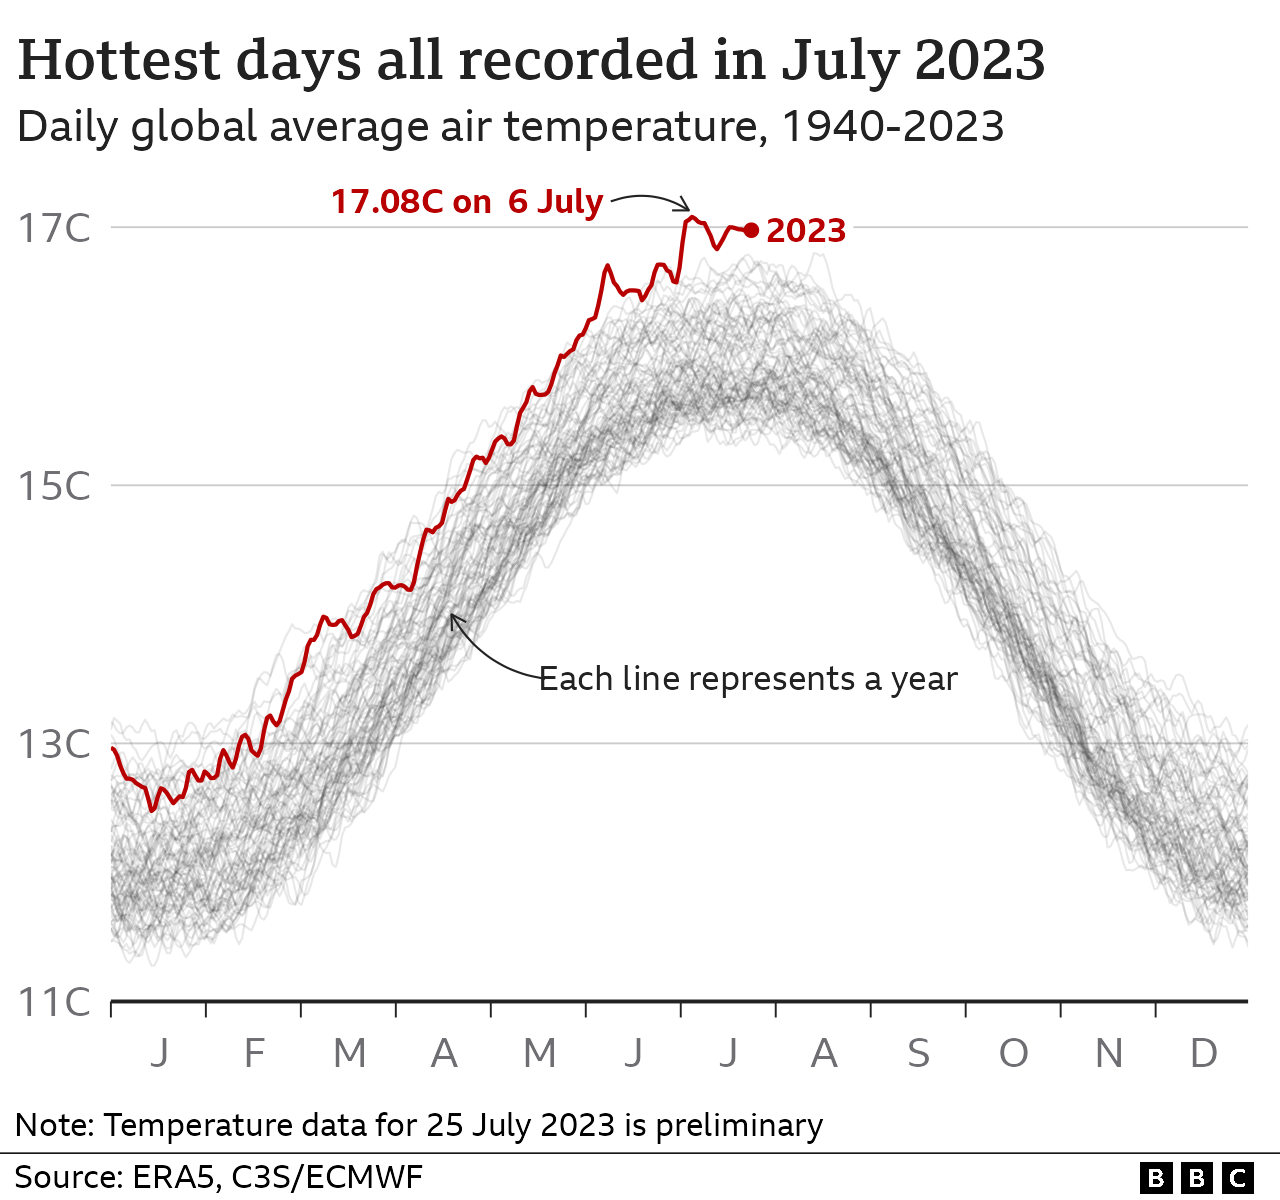 Многолинейная диаграмма, показывающая среднесуточную глобальную температуру по годам с 1940 года. 2023 год показывает самые высокие температуры, включая рекорд, установленный 6 июля в 17,08C